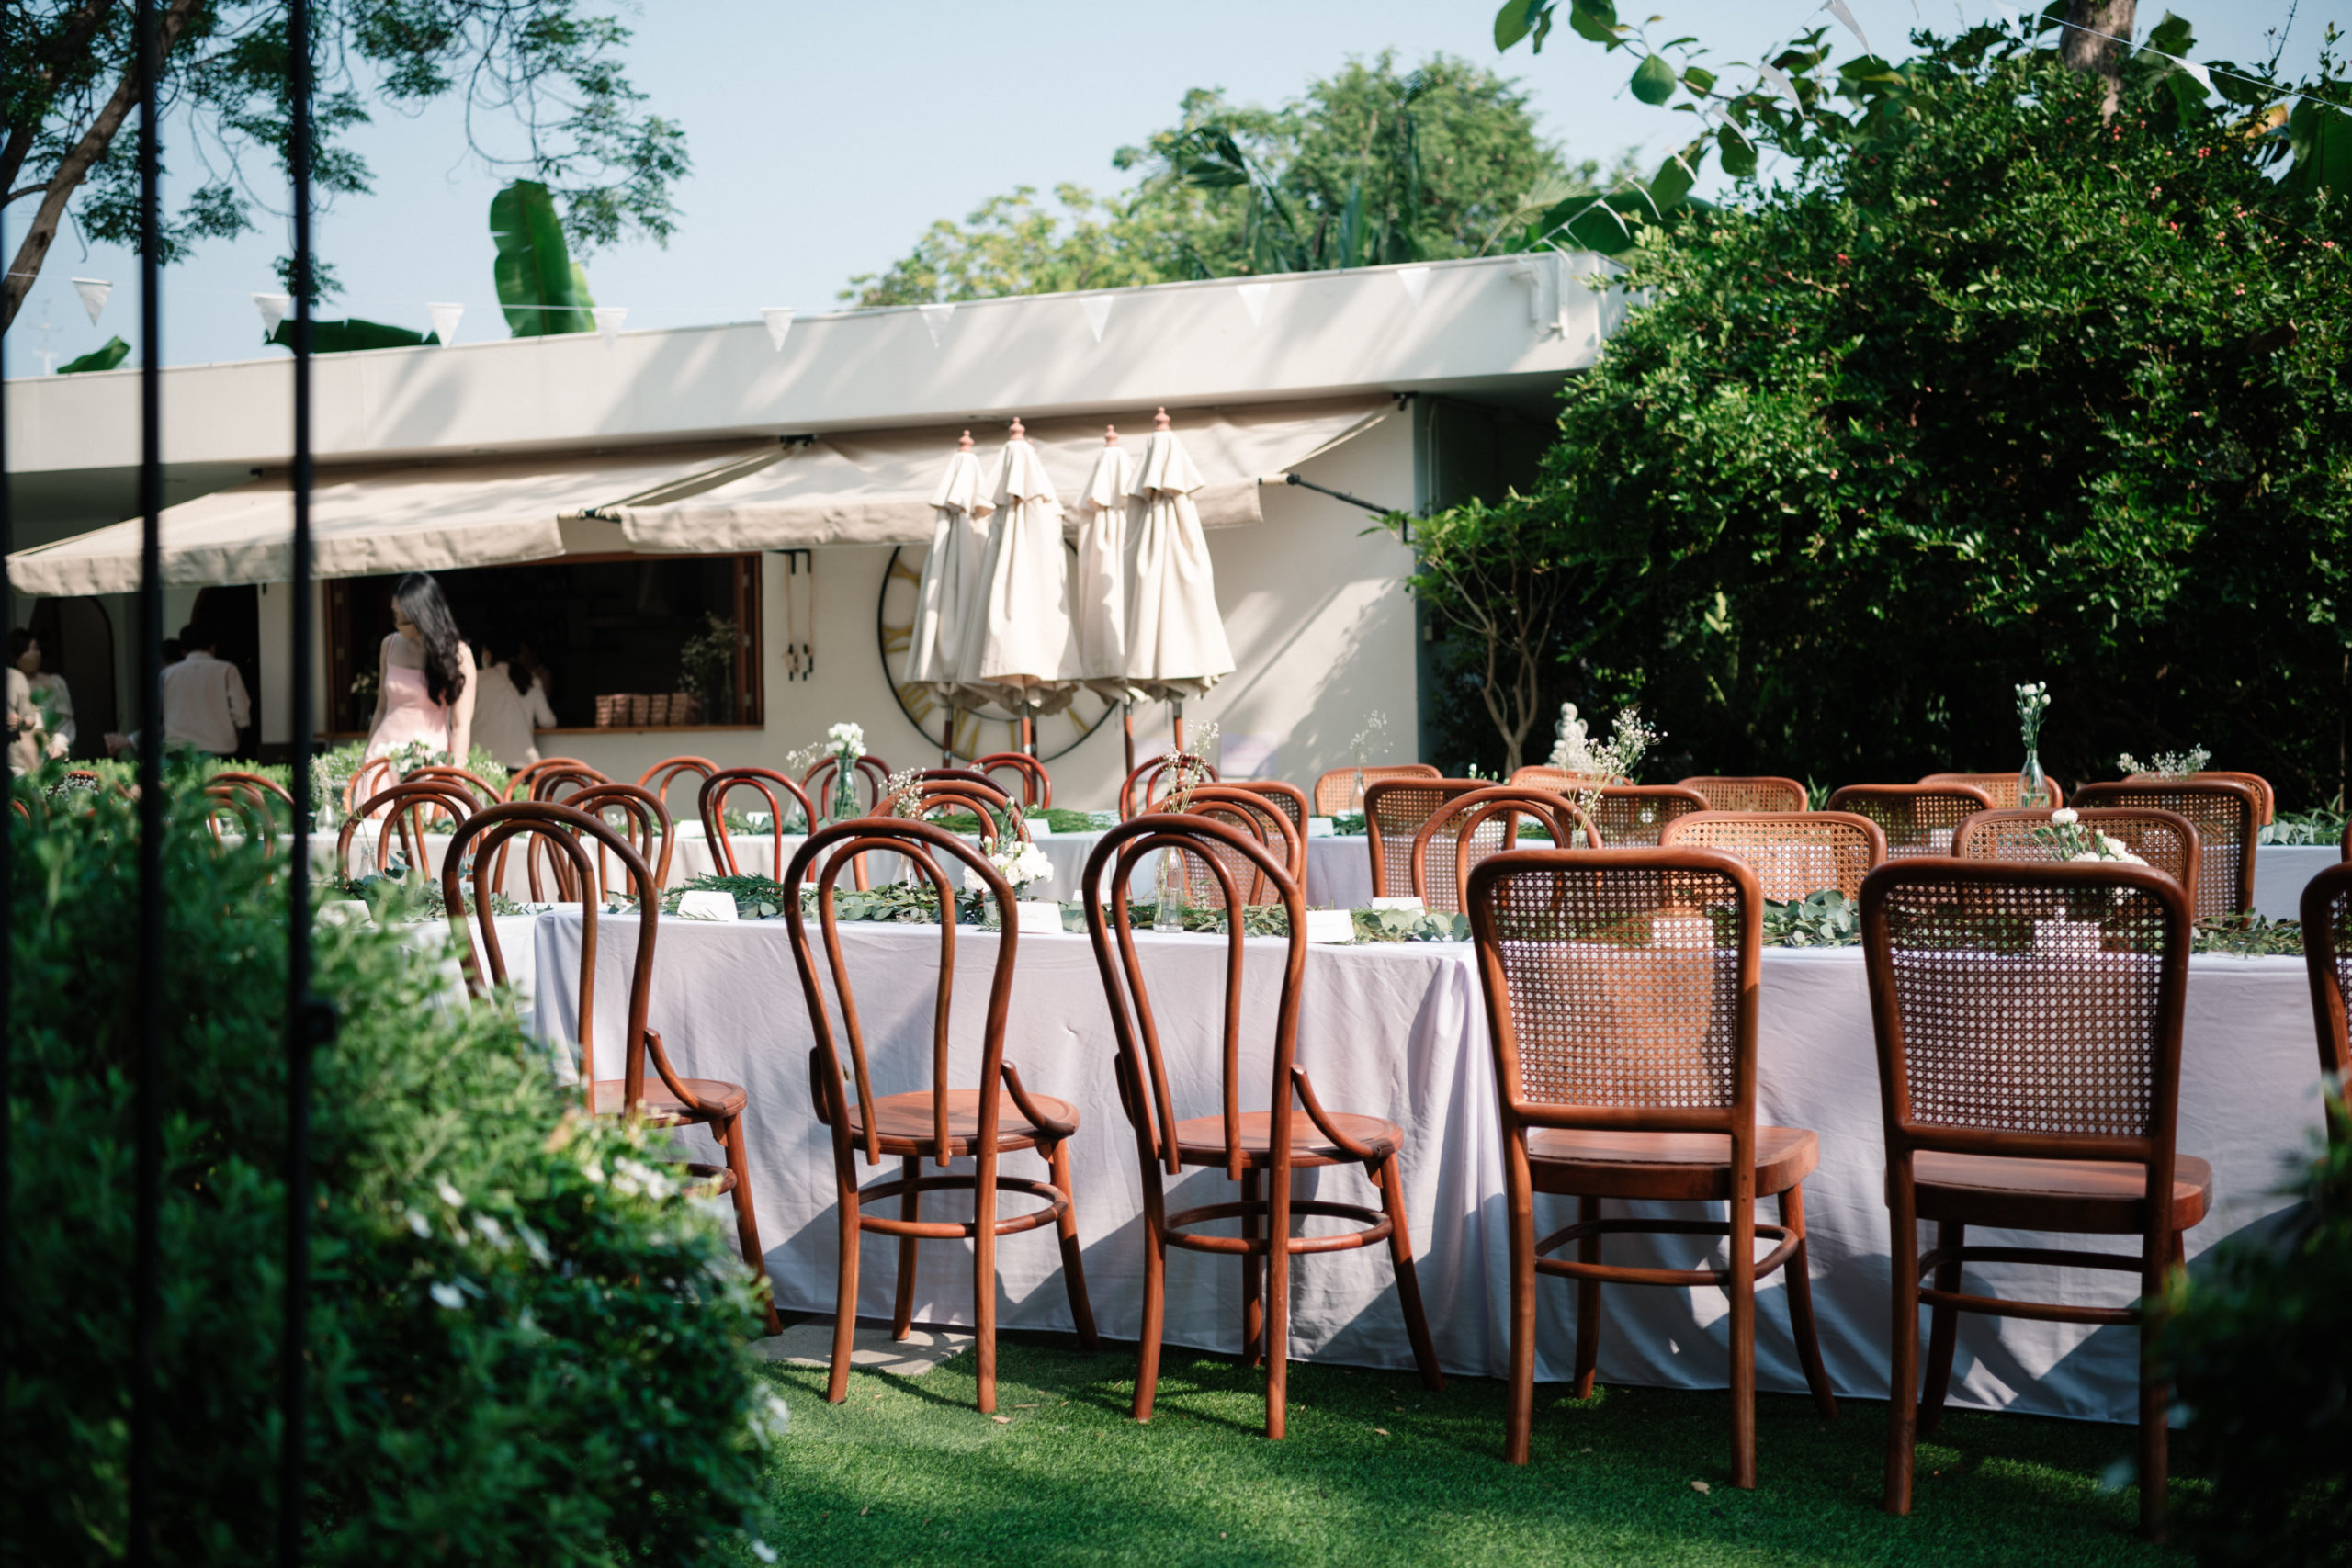 รีวิว งานแต่ง AMCO House กรุงเทพ งานแต่งในสวน งานแต่งมินิมอล สถานที่จัดงานแต่งมินิมอล เวดดิ้งแพลนเนอร์ minimal outdoor bangkok wedding planner